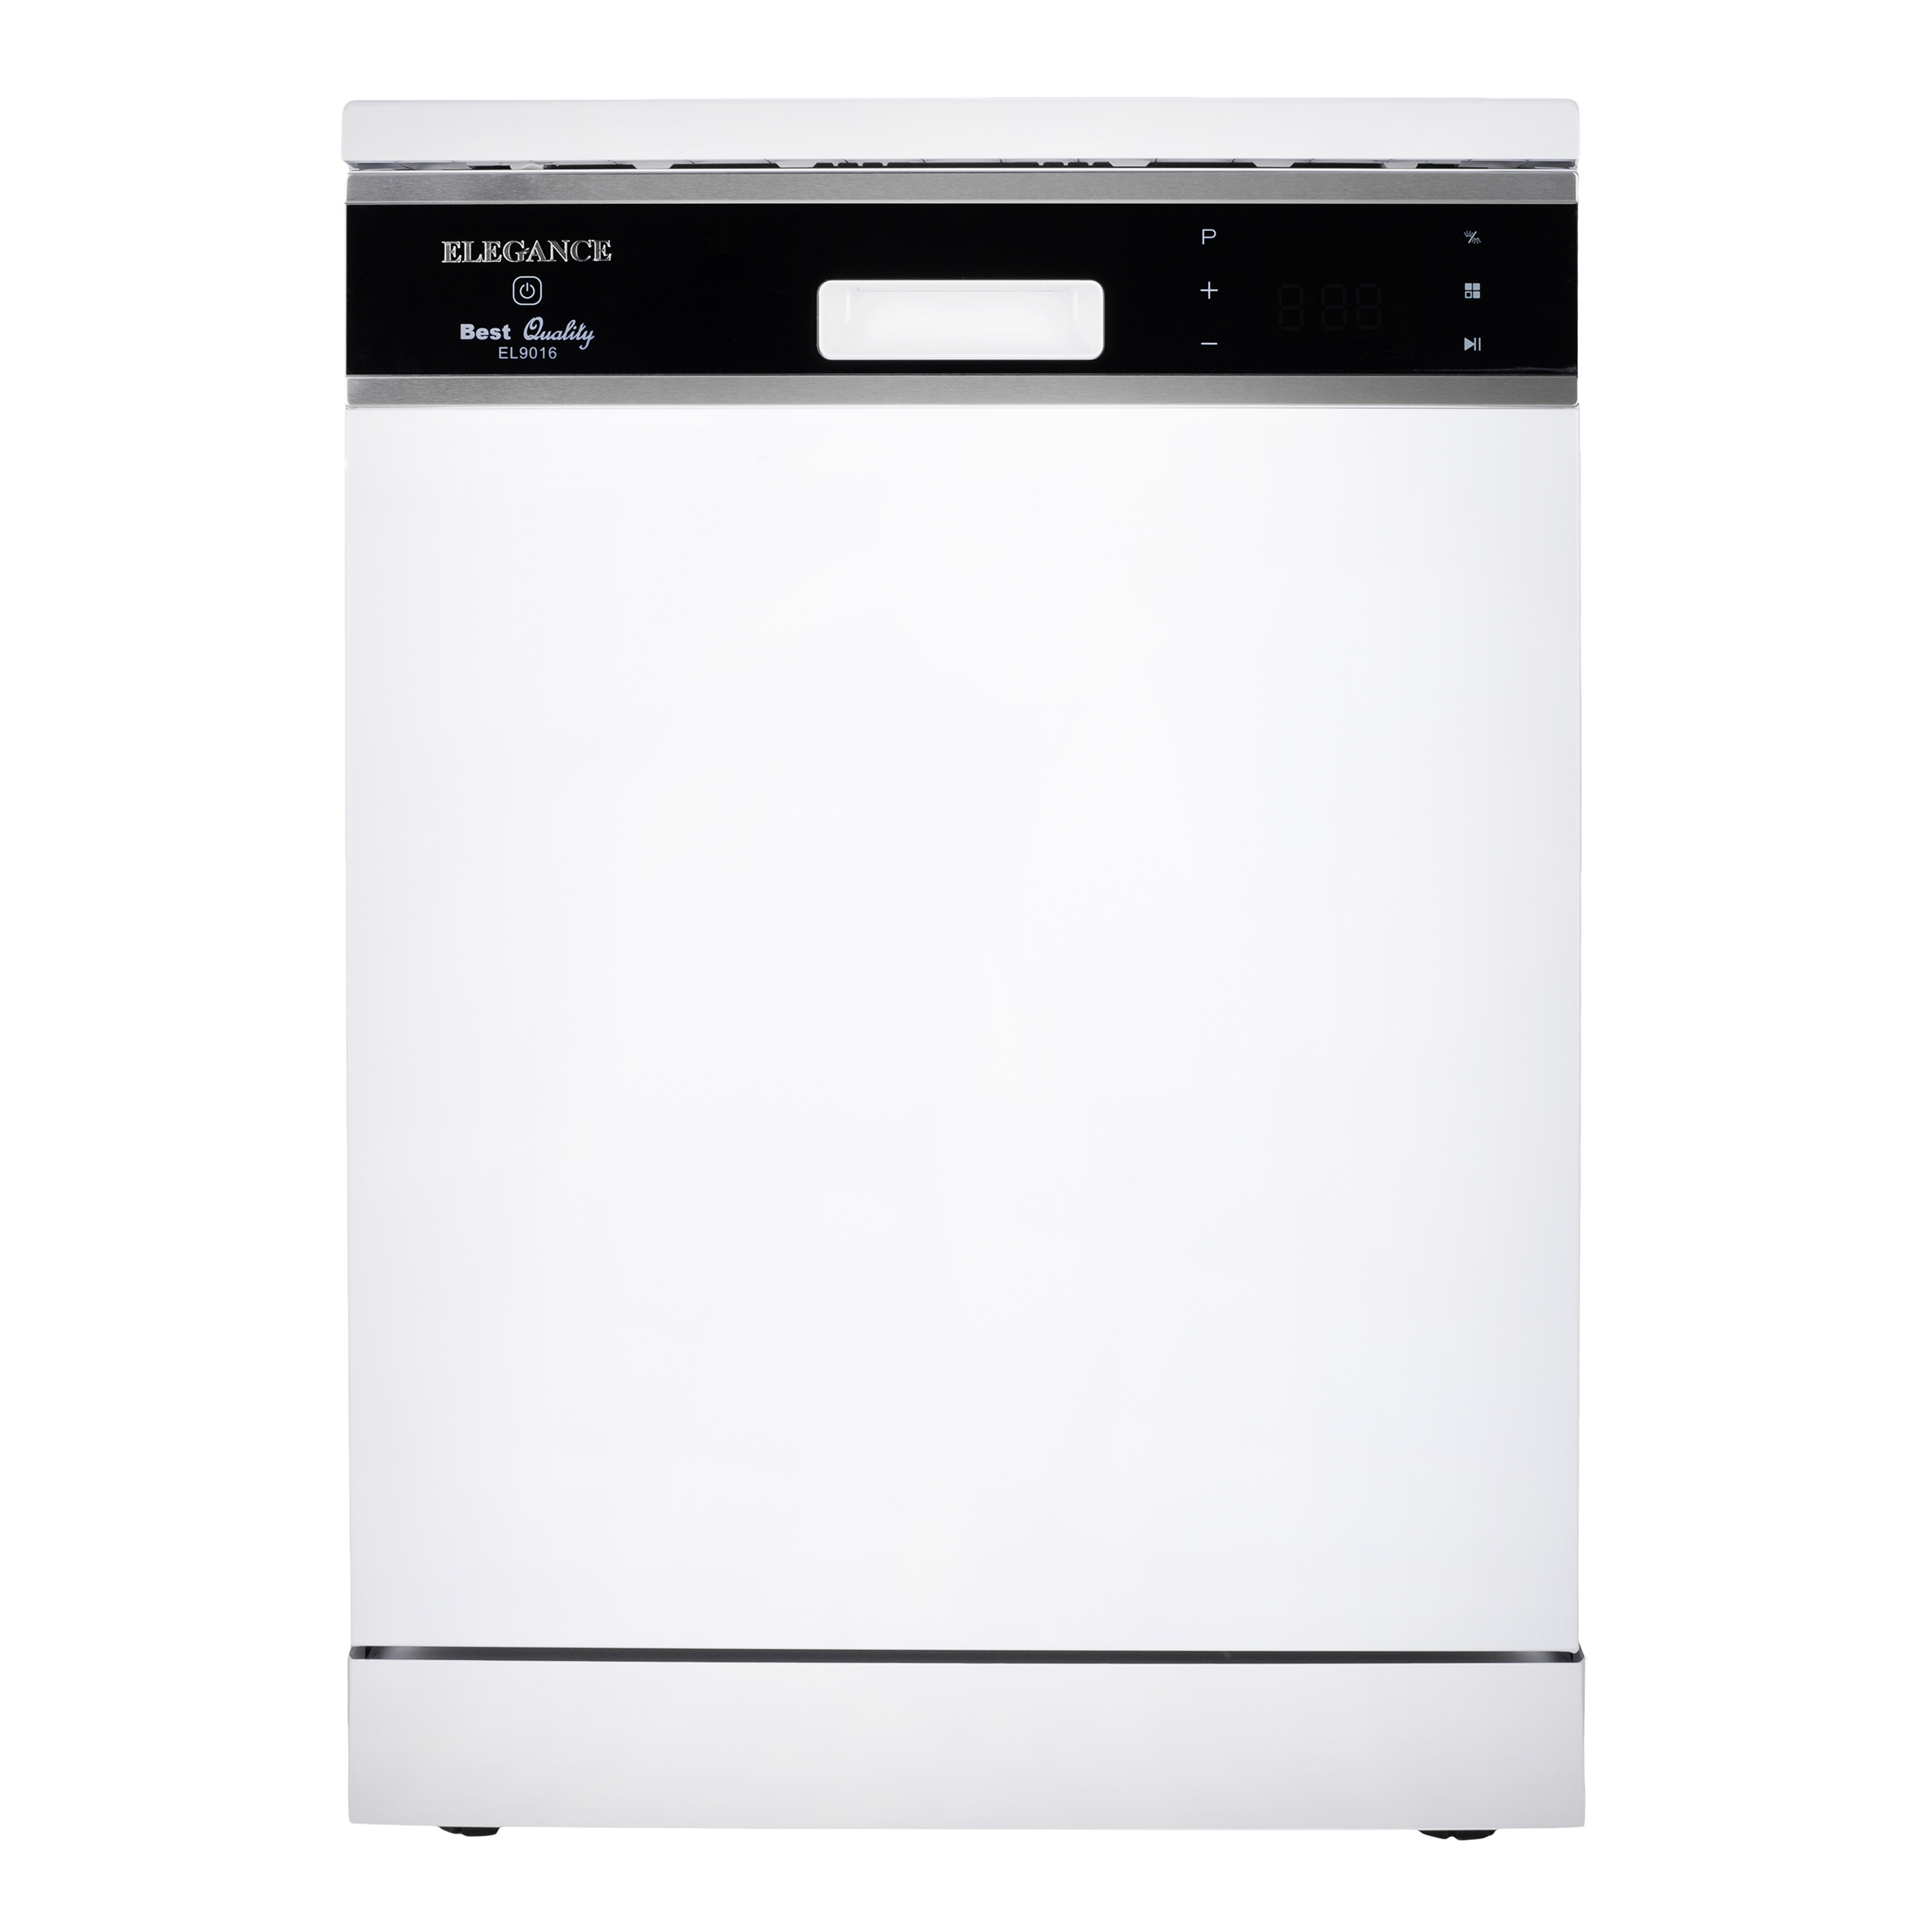 نکته خرید - قیمت روز ماشین ظرفشویی الگانس مدل EL9016 خرید